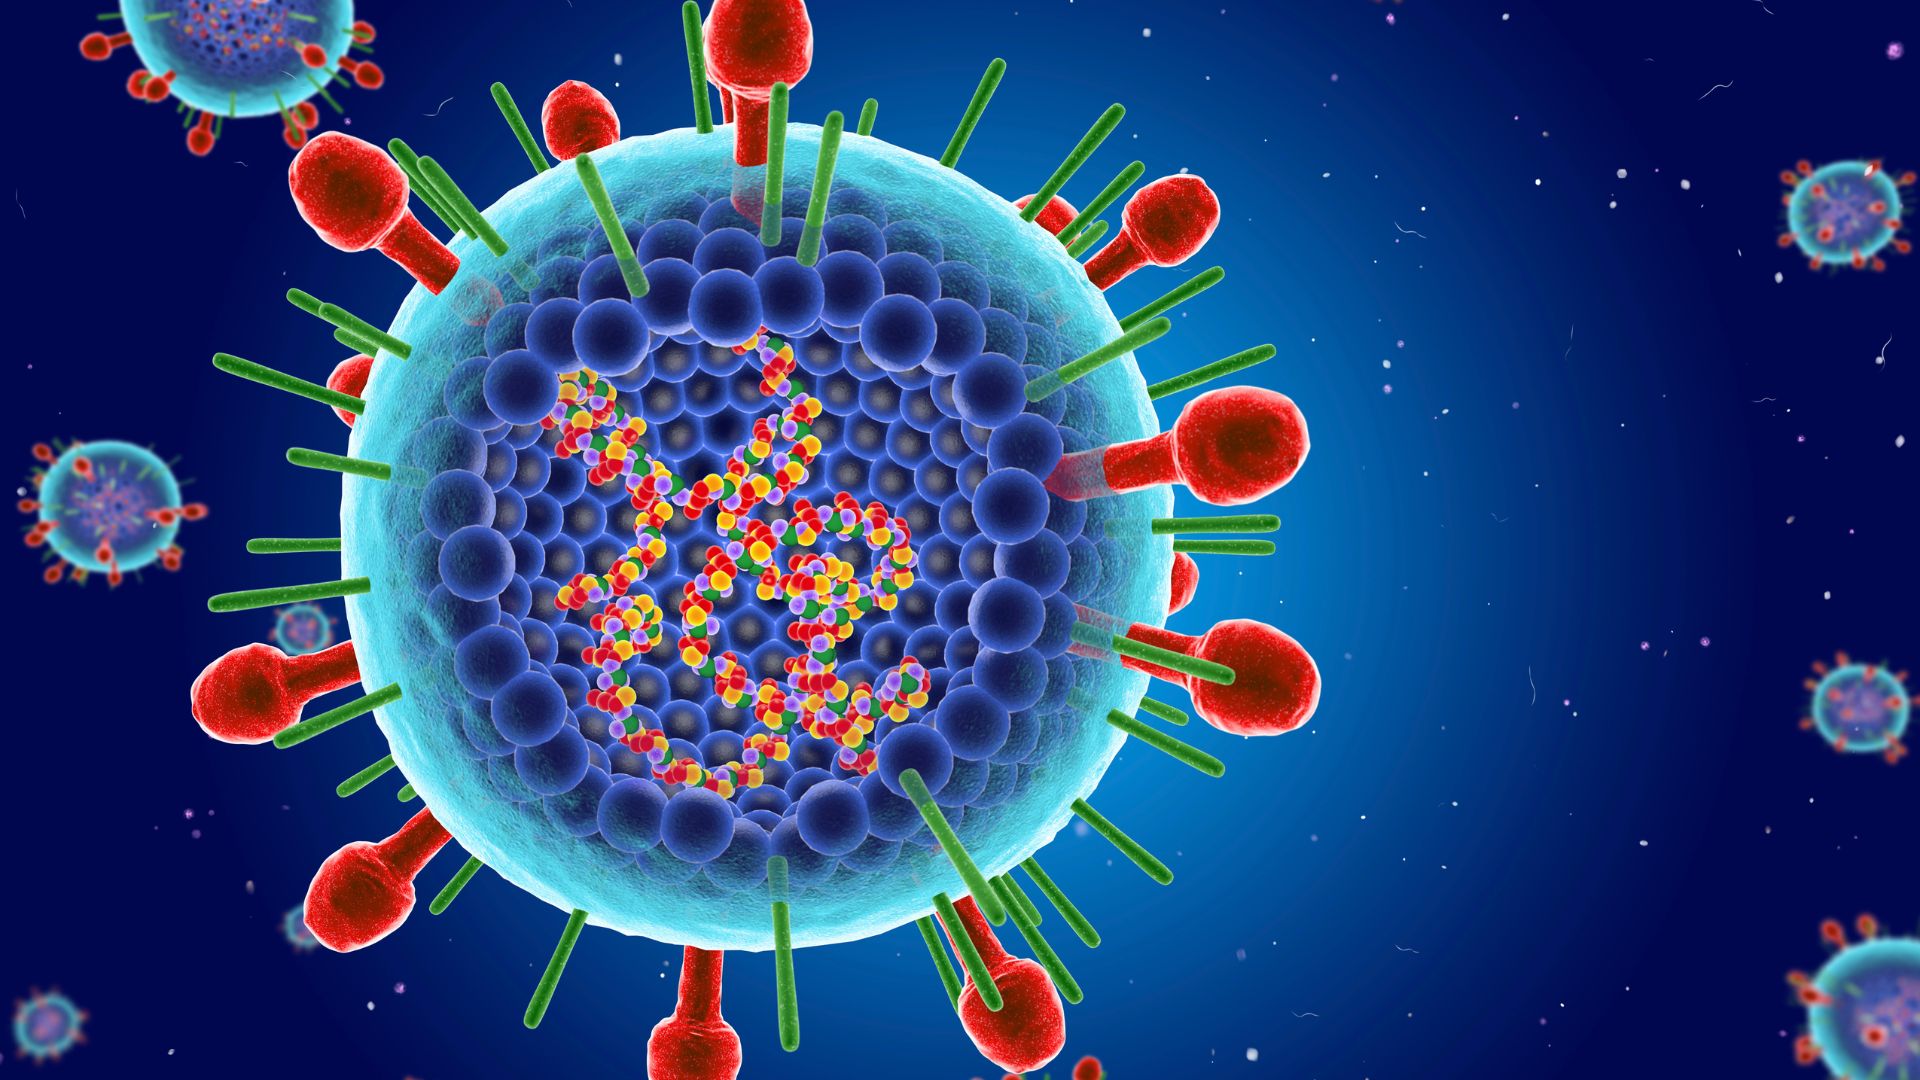 красочная иллюстрация вируса РСВ, на которой вы можете увидеть свернувшийся внутри генетический материал